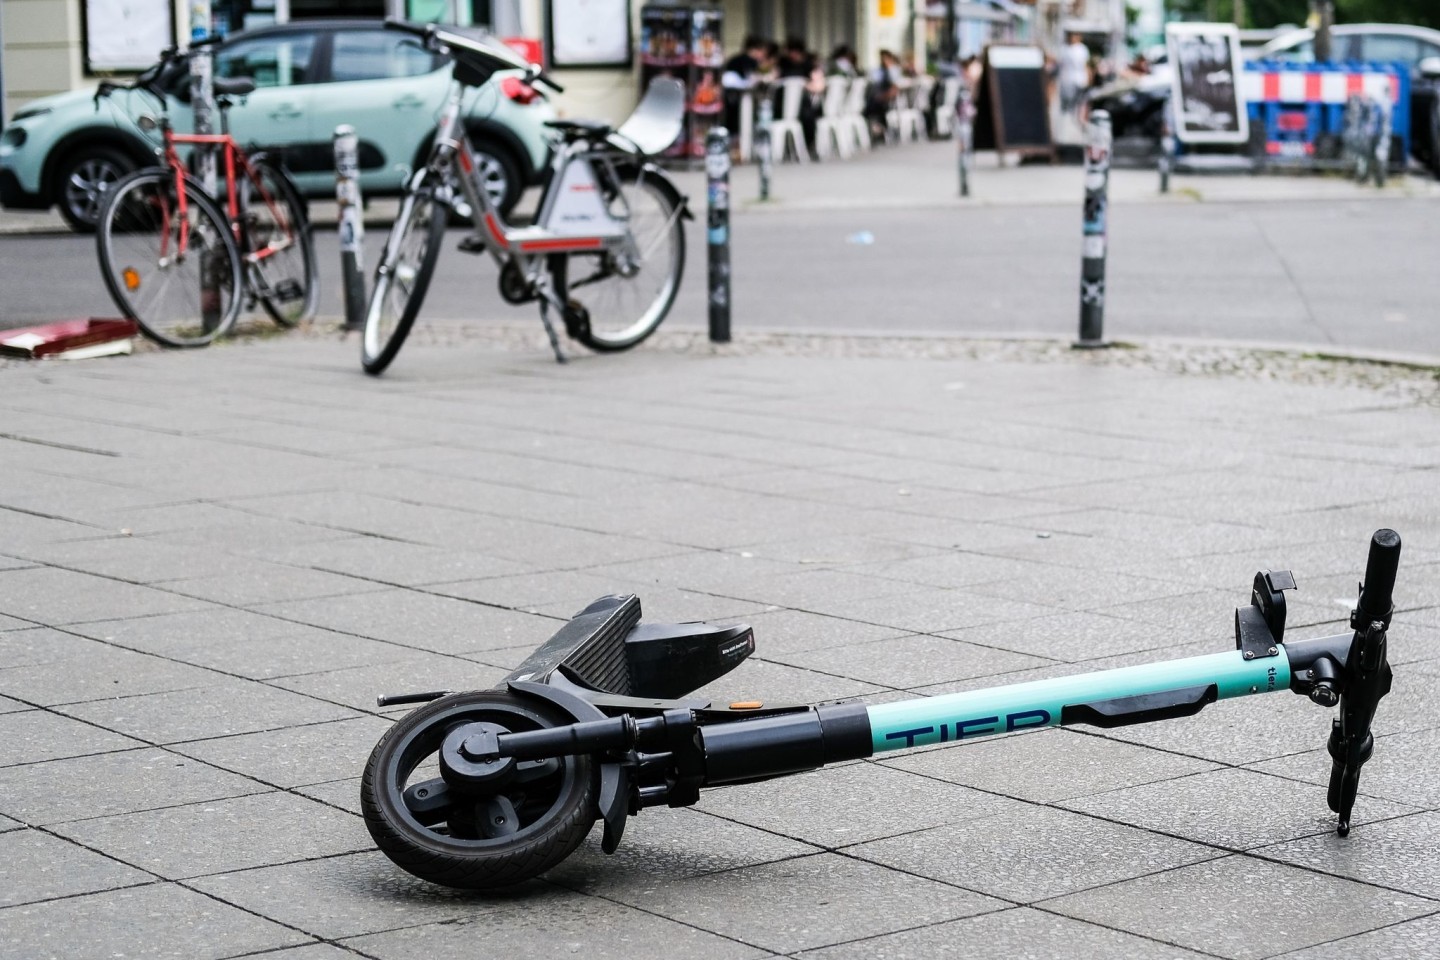 Umgekippte E-Roller mitten auf dem Geh- oder Fahrradweg können zu Unfällen führen.